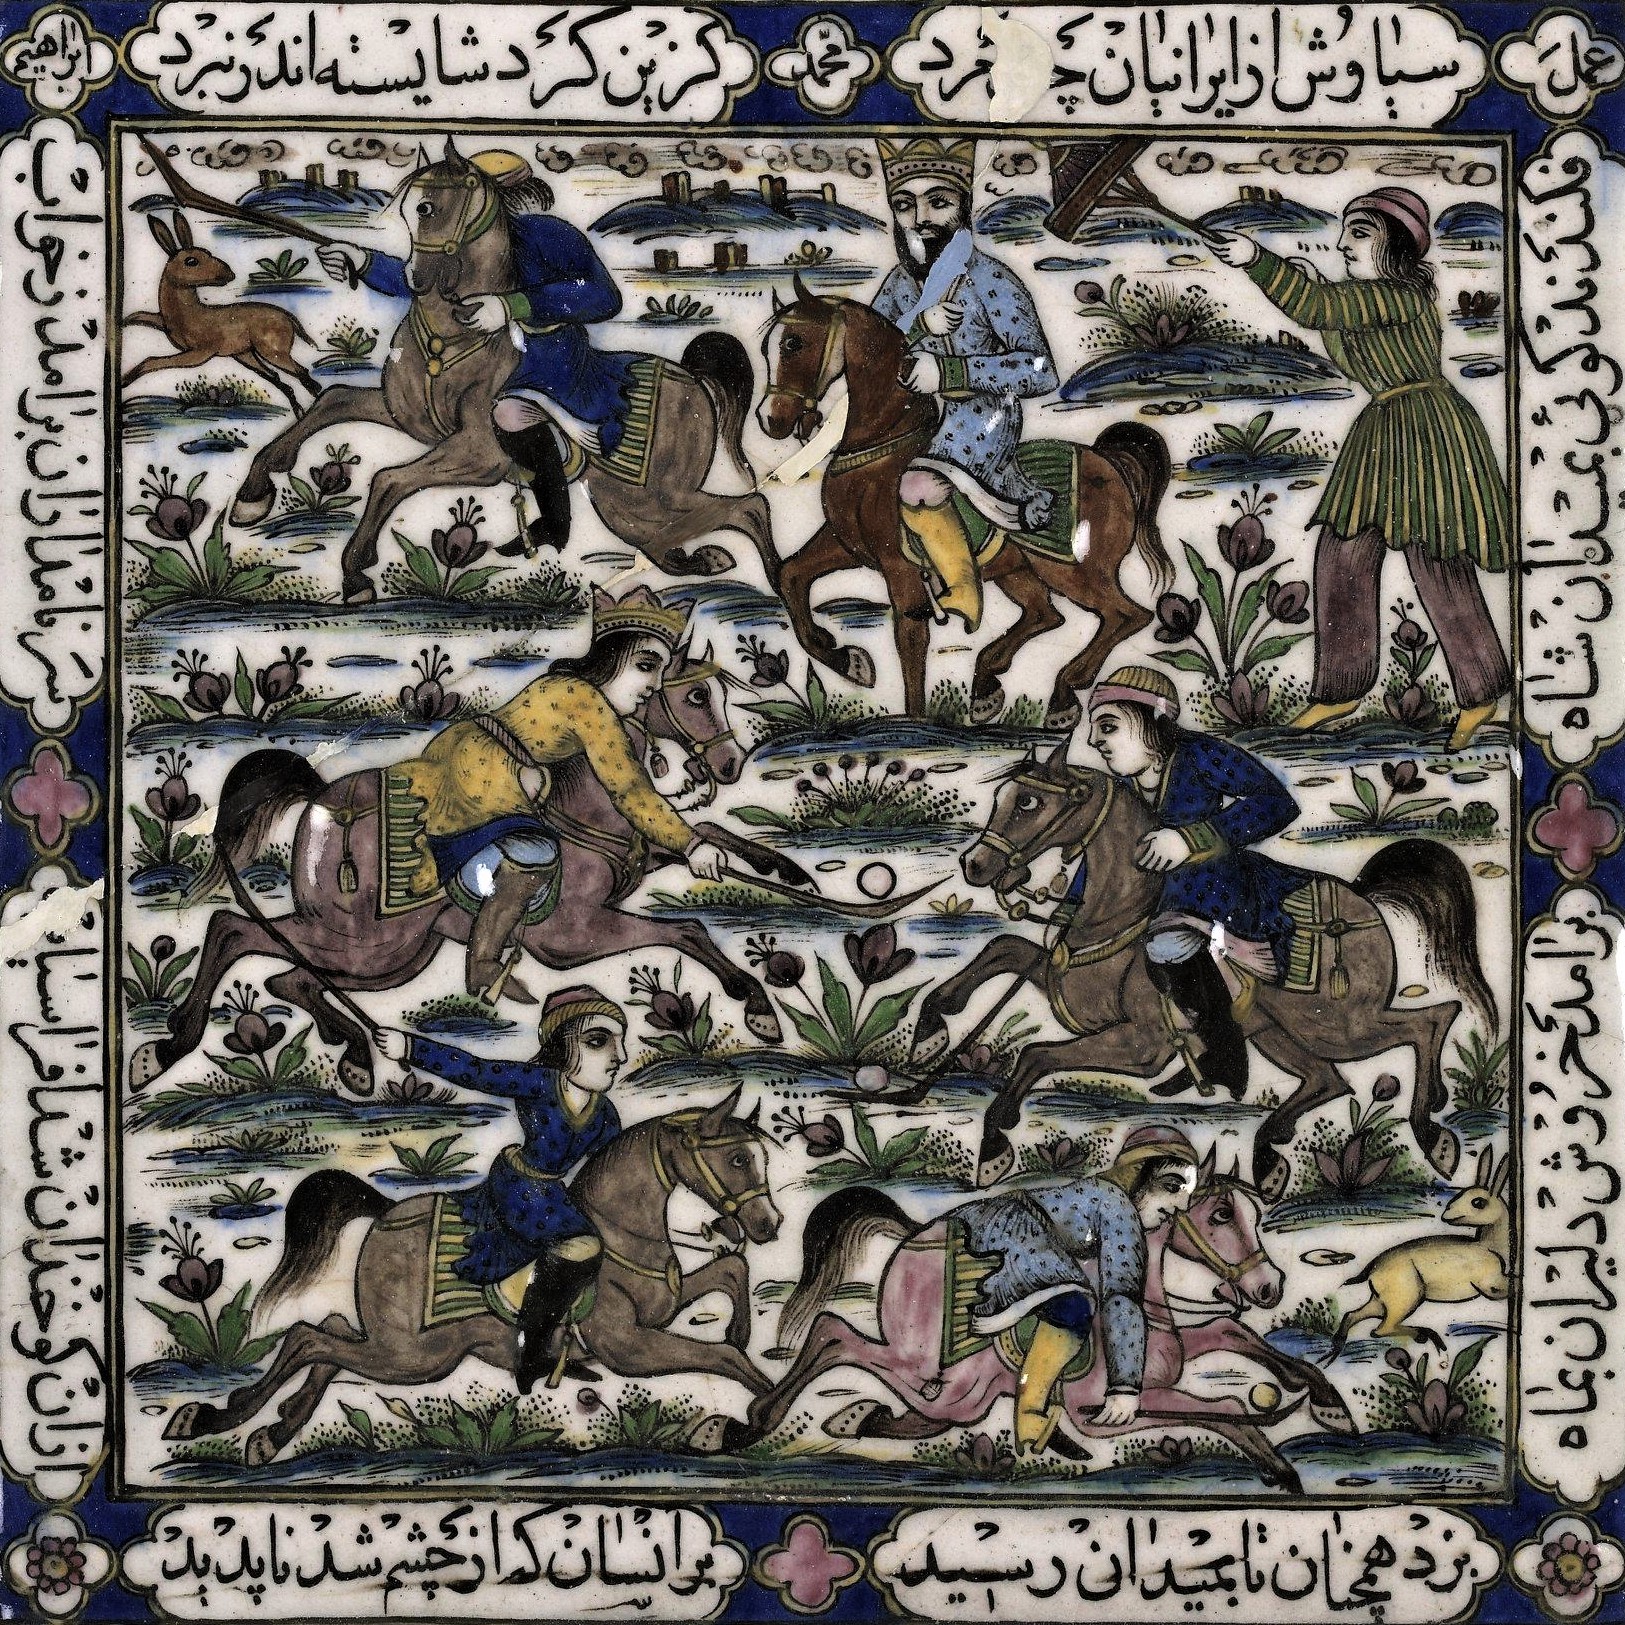 Ceramic tile design based on verses describing a polo match in Shahnameh